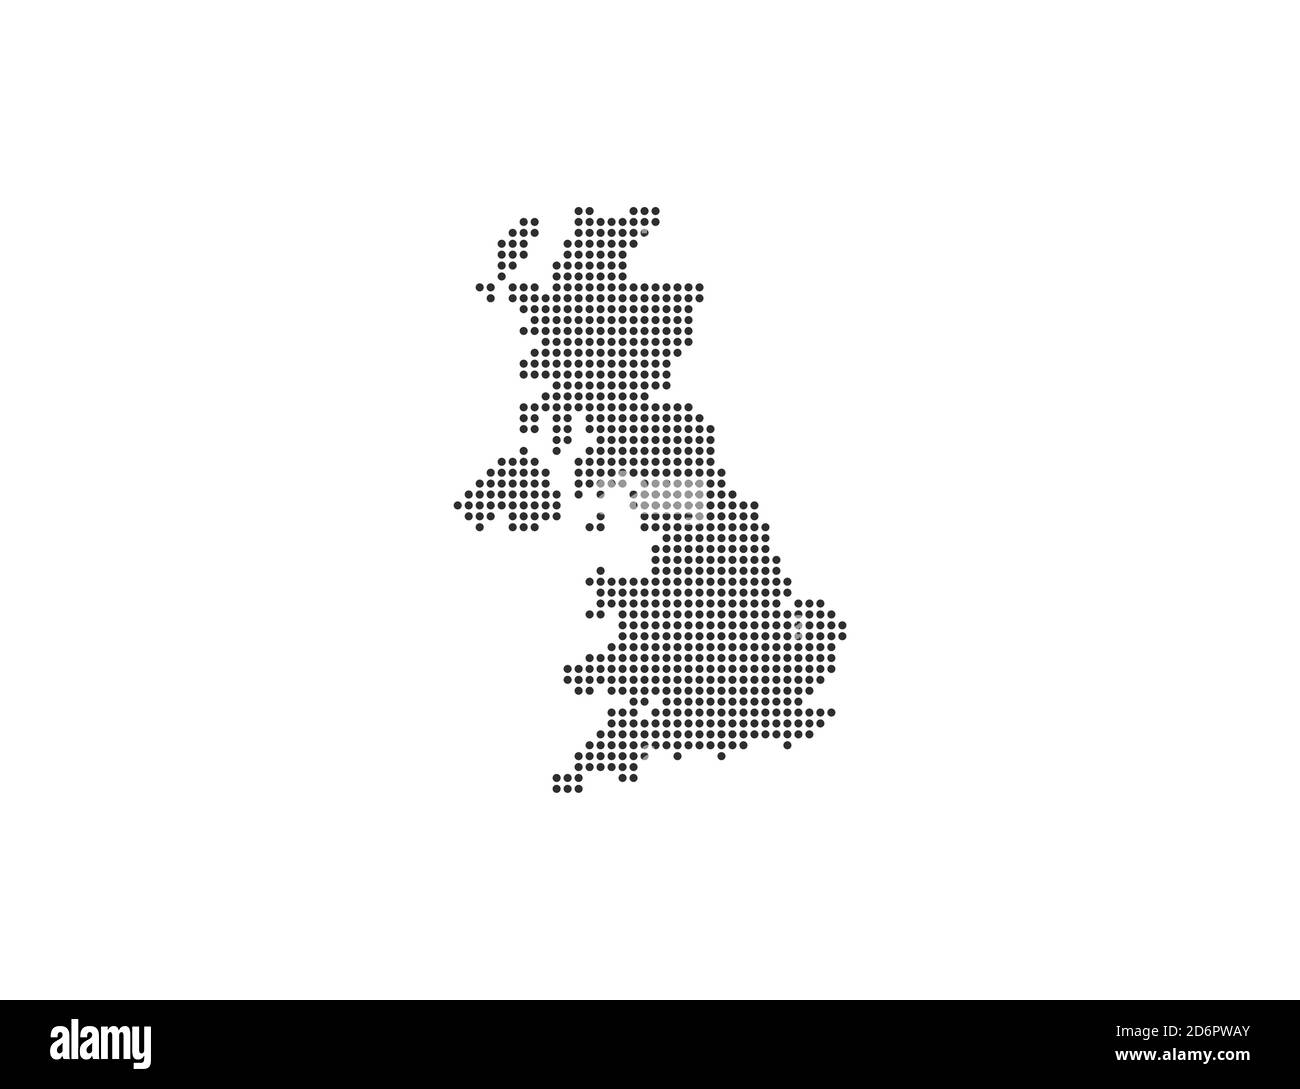 Vereinigtes Königreich, Land, gepunktete Karte auf weißem Hintergrund. Vektorgrafik. Stock Vektor